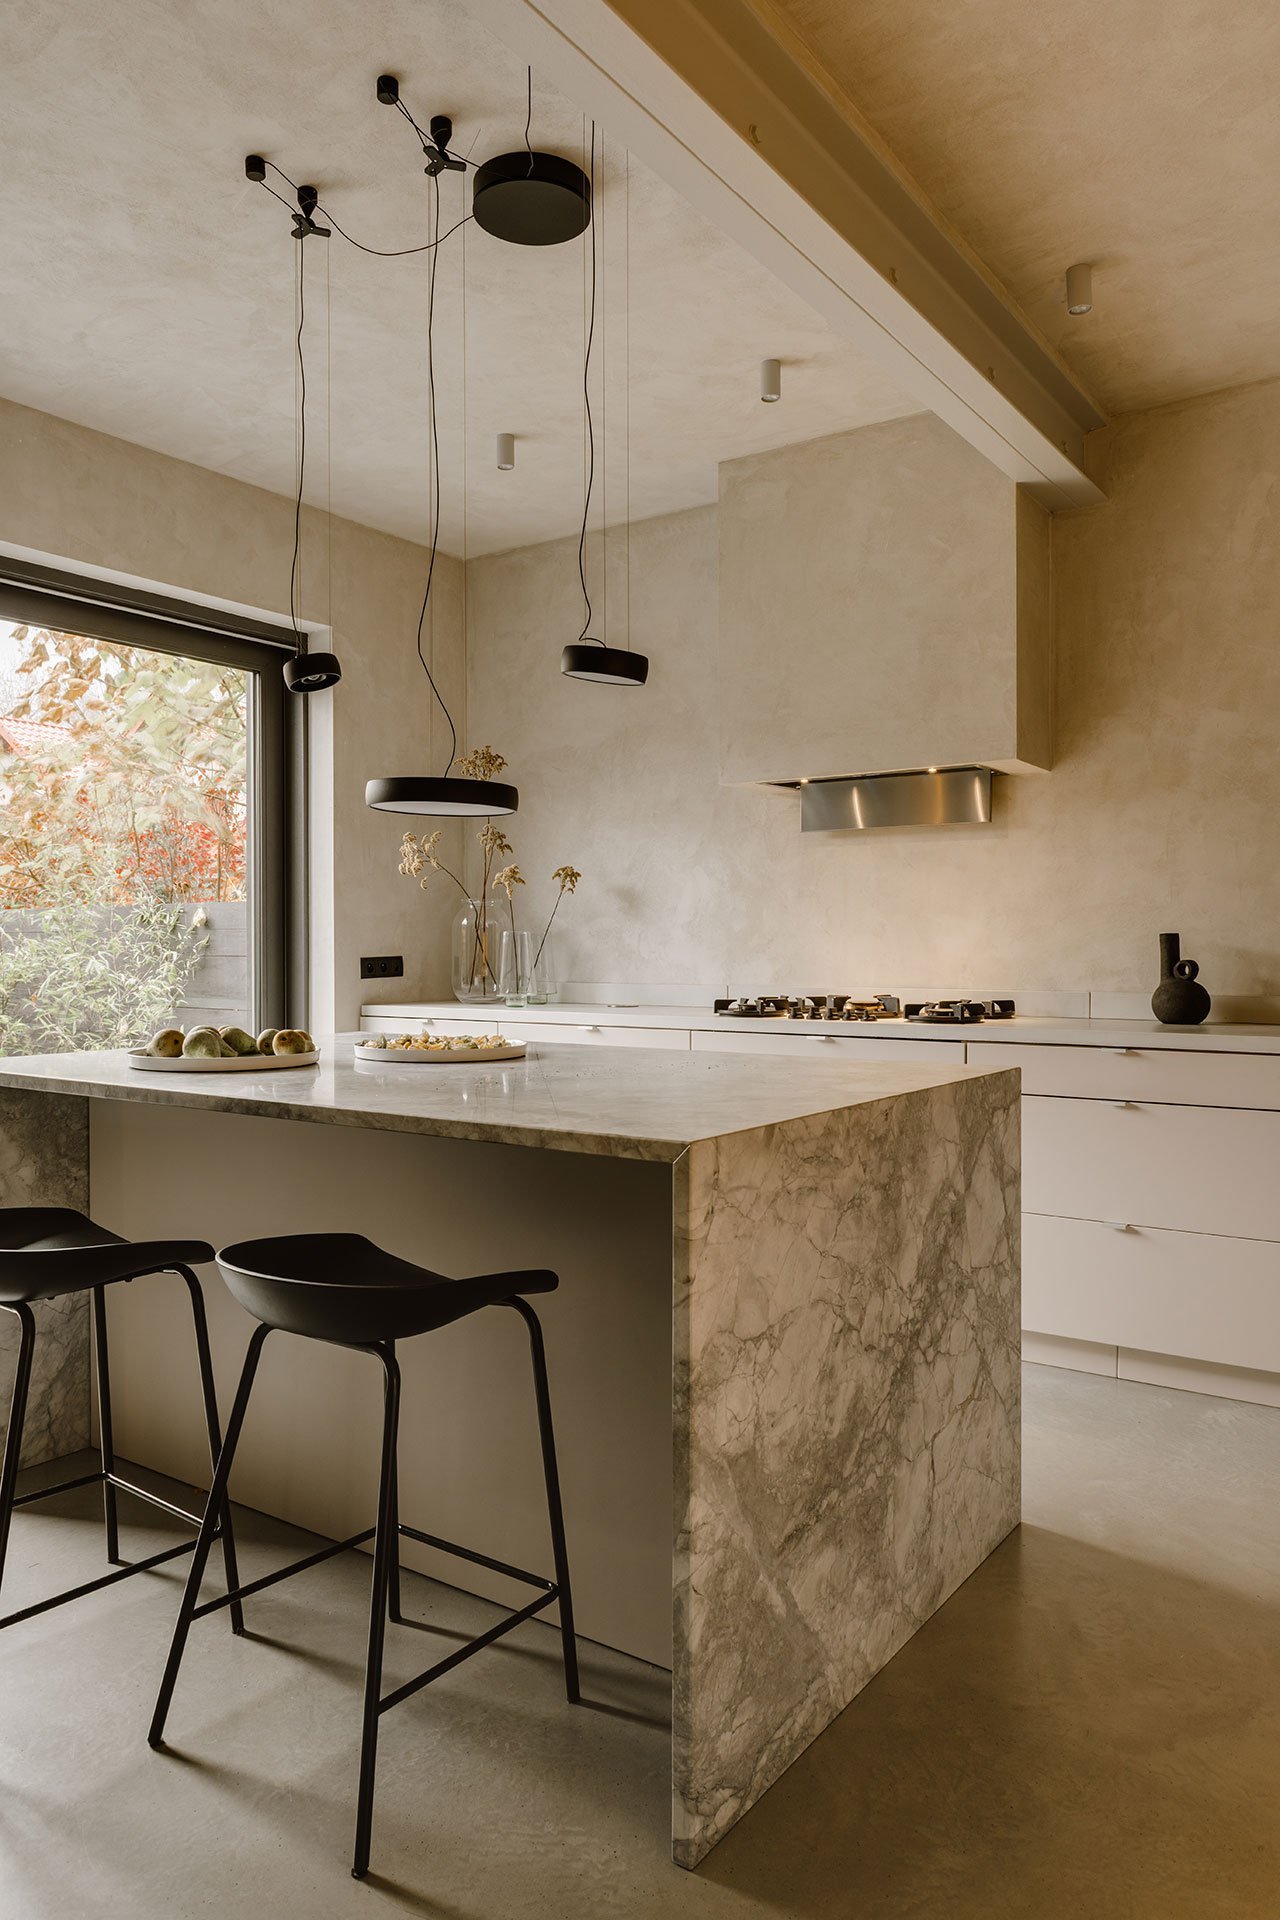 Casa en Polonia con interiores en color ocre y mucha artesania cocina con isla de piedra